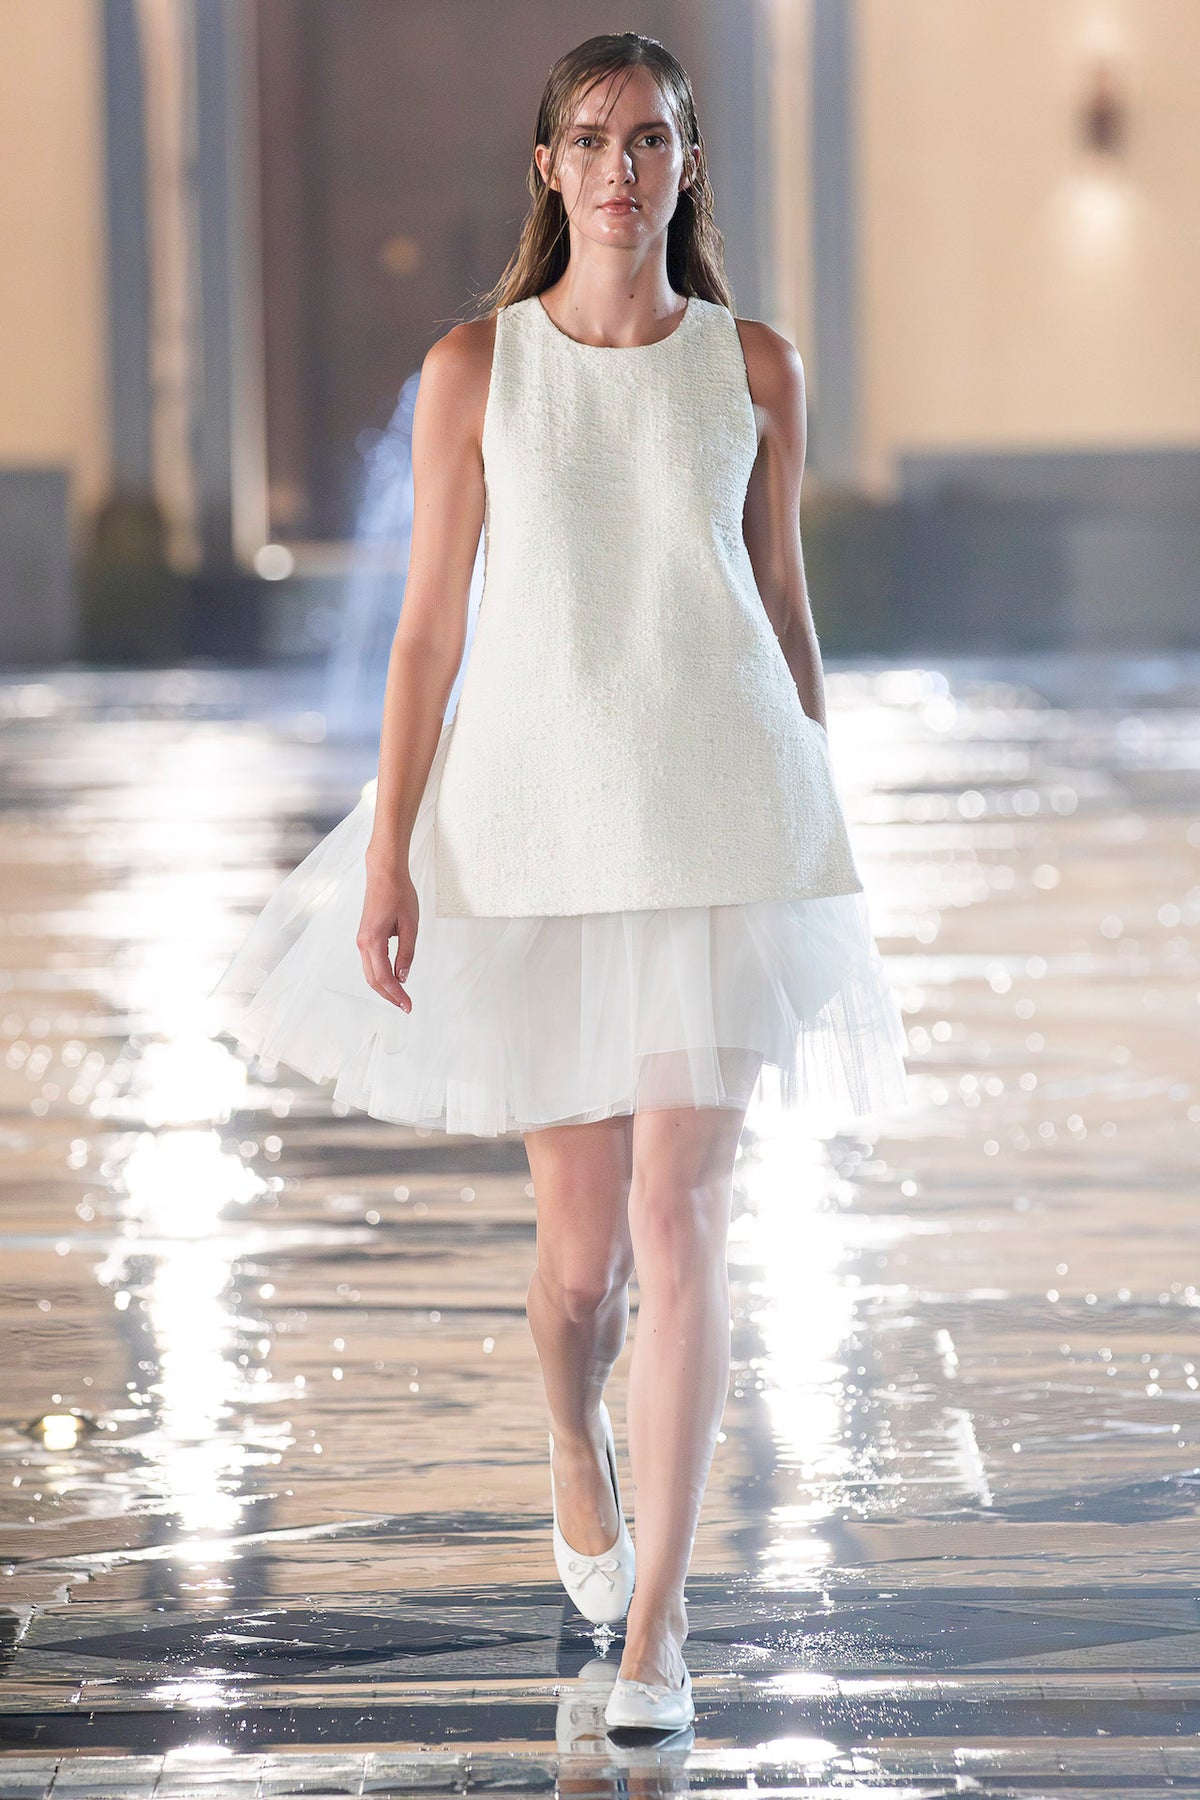 Rafaela Dress in Foam White | Noon By Noor